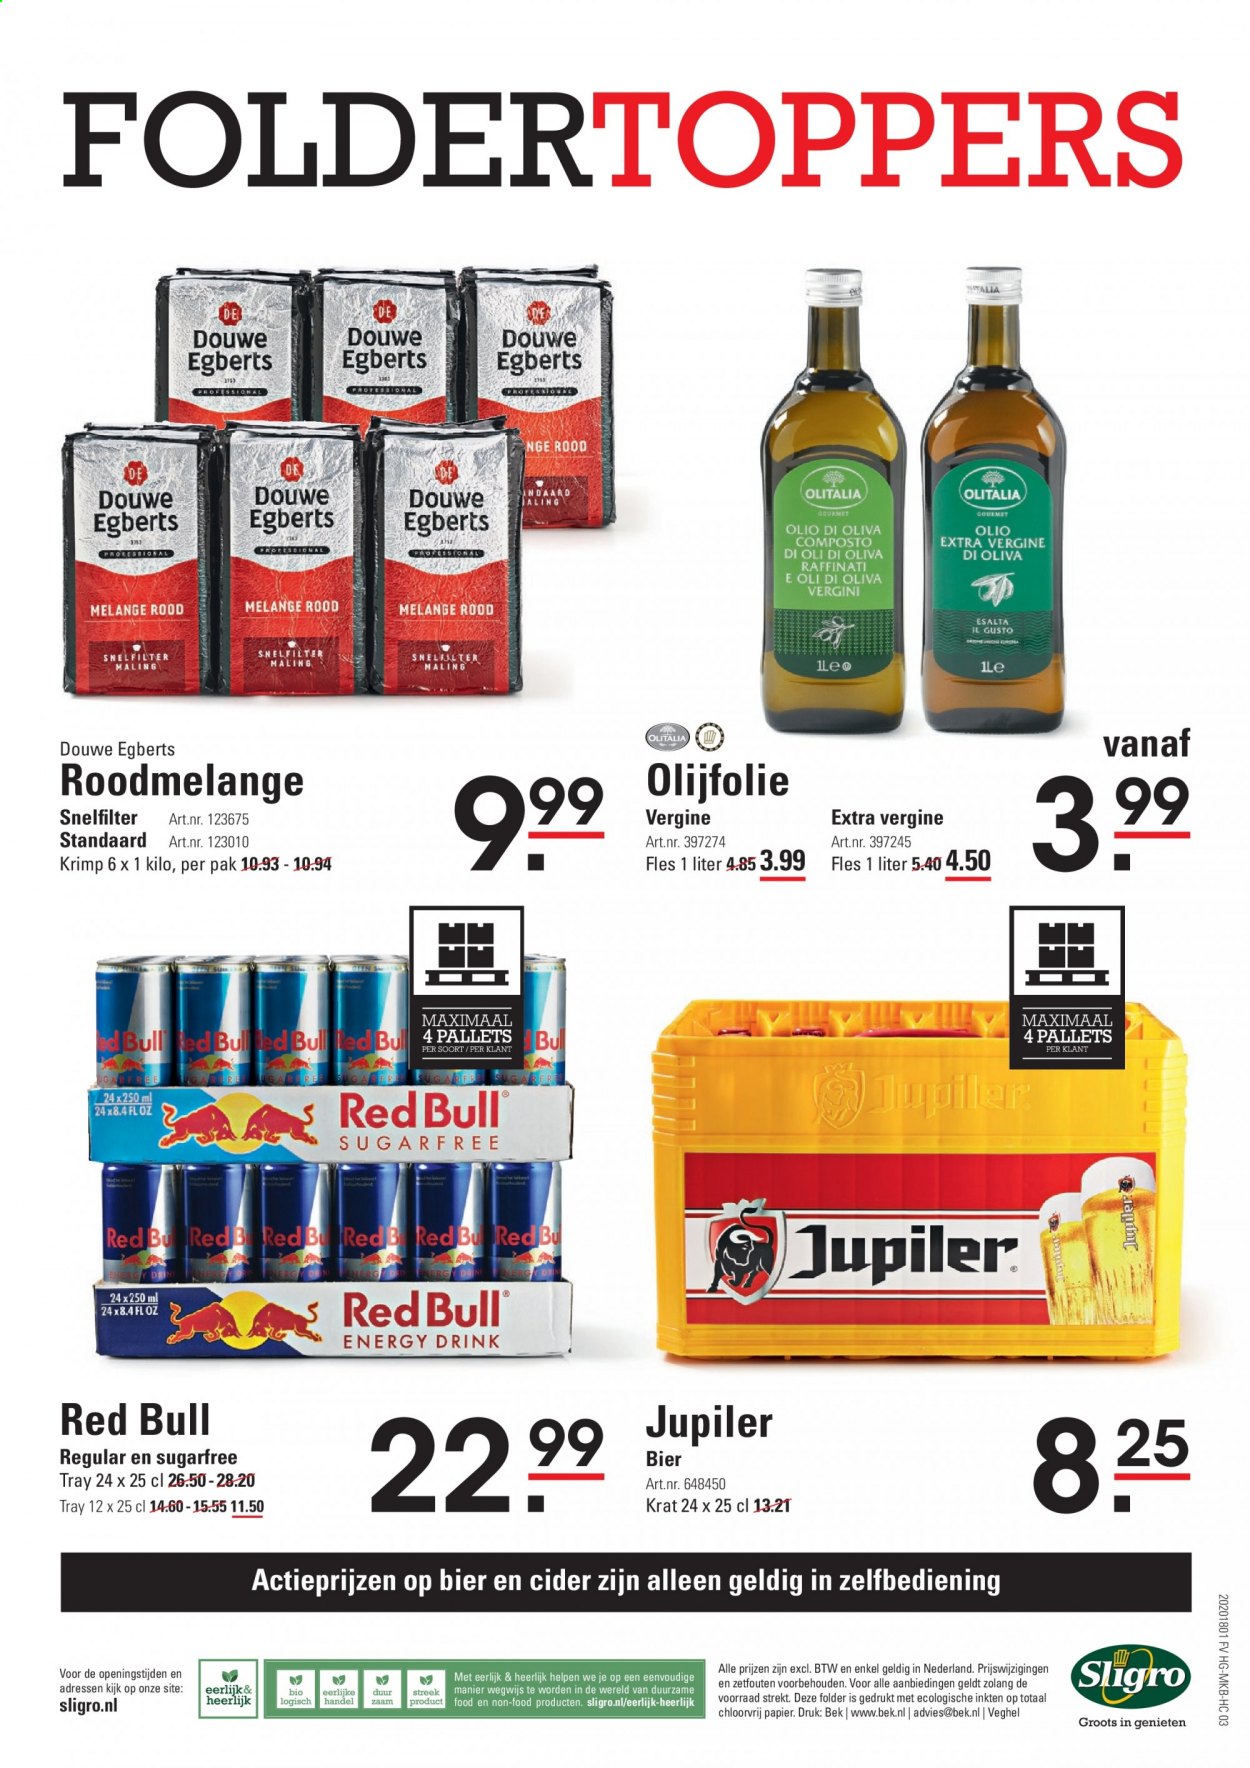 thumbnail - Sligro-aanbieding - 18-2-2021 - 8-3-2021 -  producten in de aanbieding - Jupiler, bier, olijfolie, Red Bull, Douwe Egberts, cider. Pagina 24.